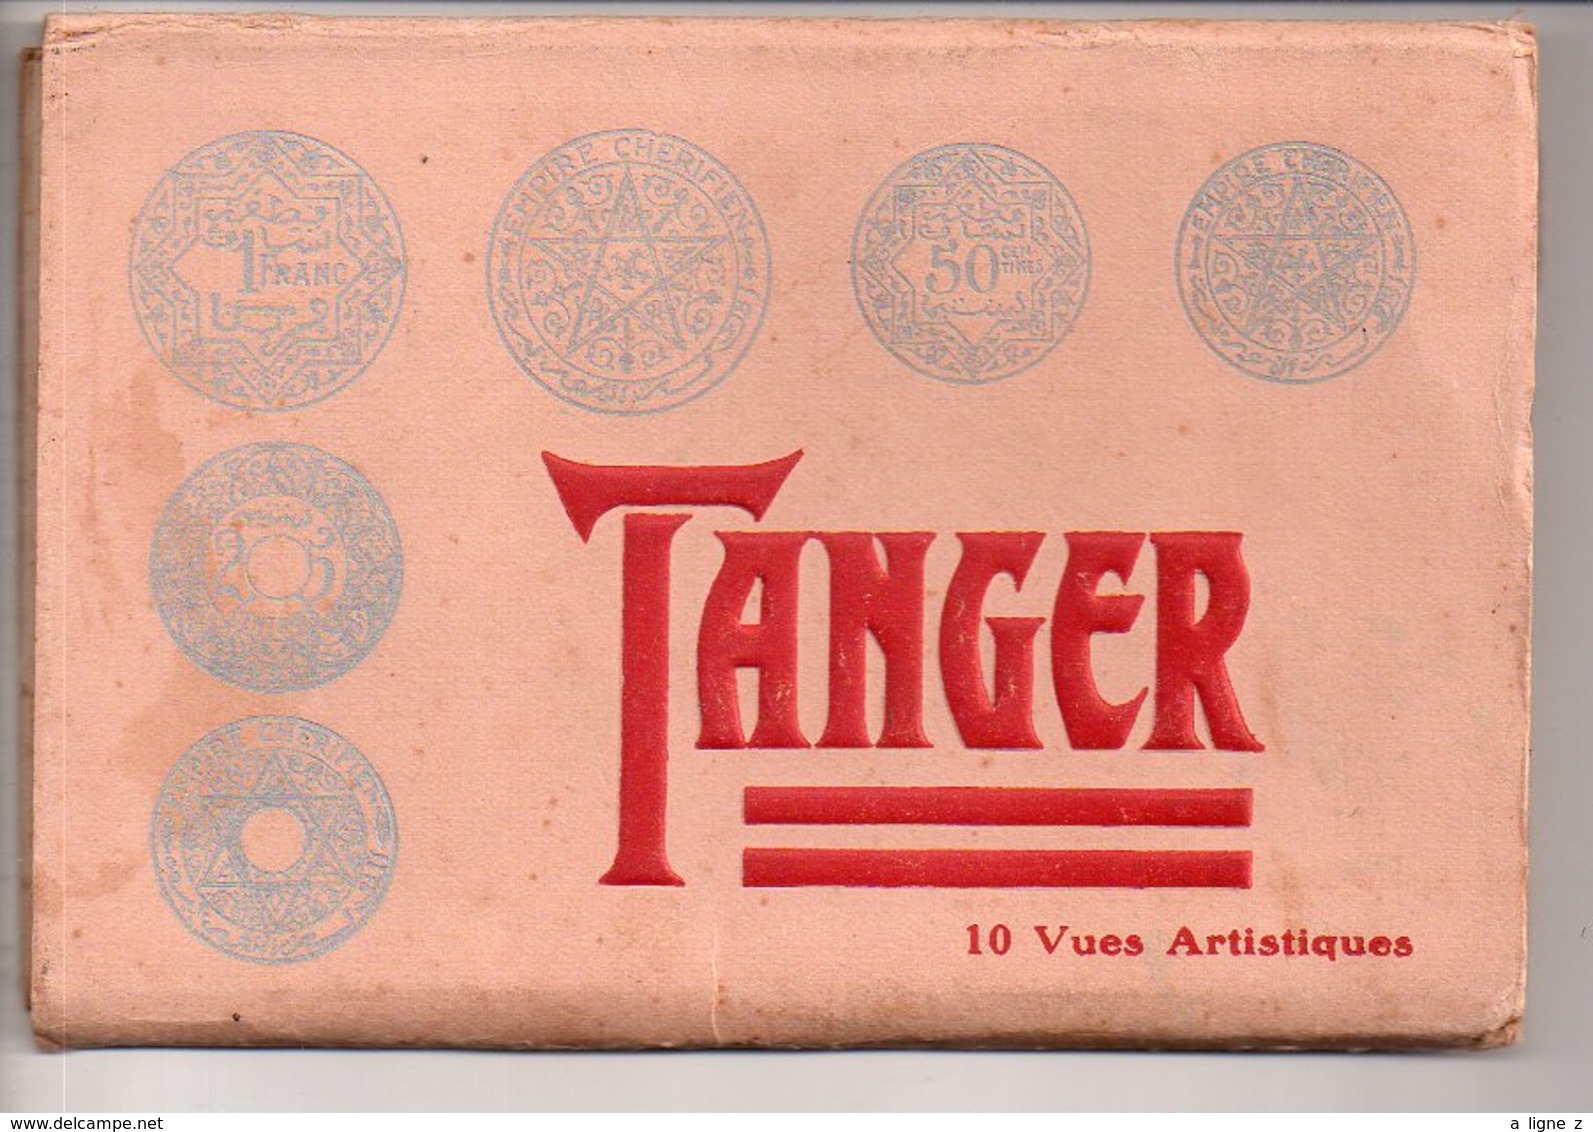 REF 371 : Carnet TANGER MAROC 10 Vues Artistiques ( La Pochette Est Illustrée Avec Monnaies Du Maroc) Empire Chérifien - Tanger